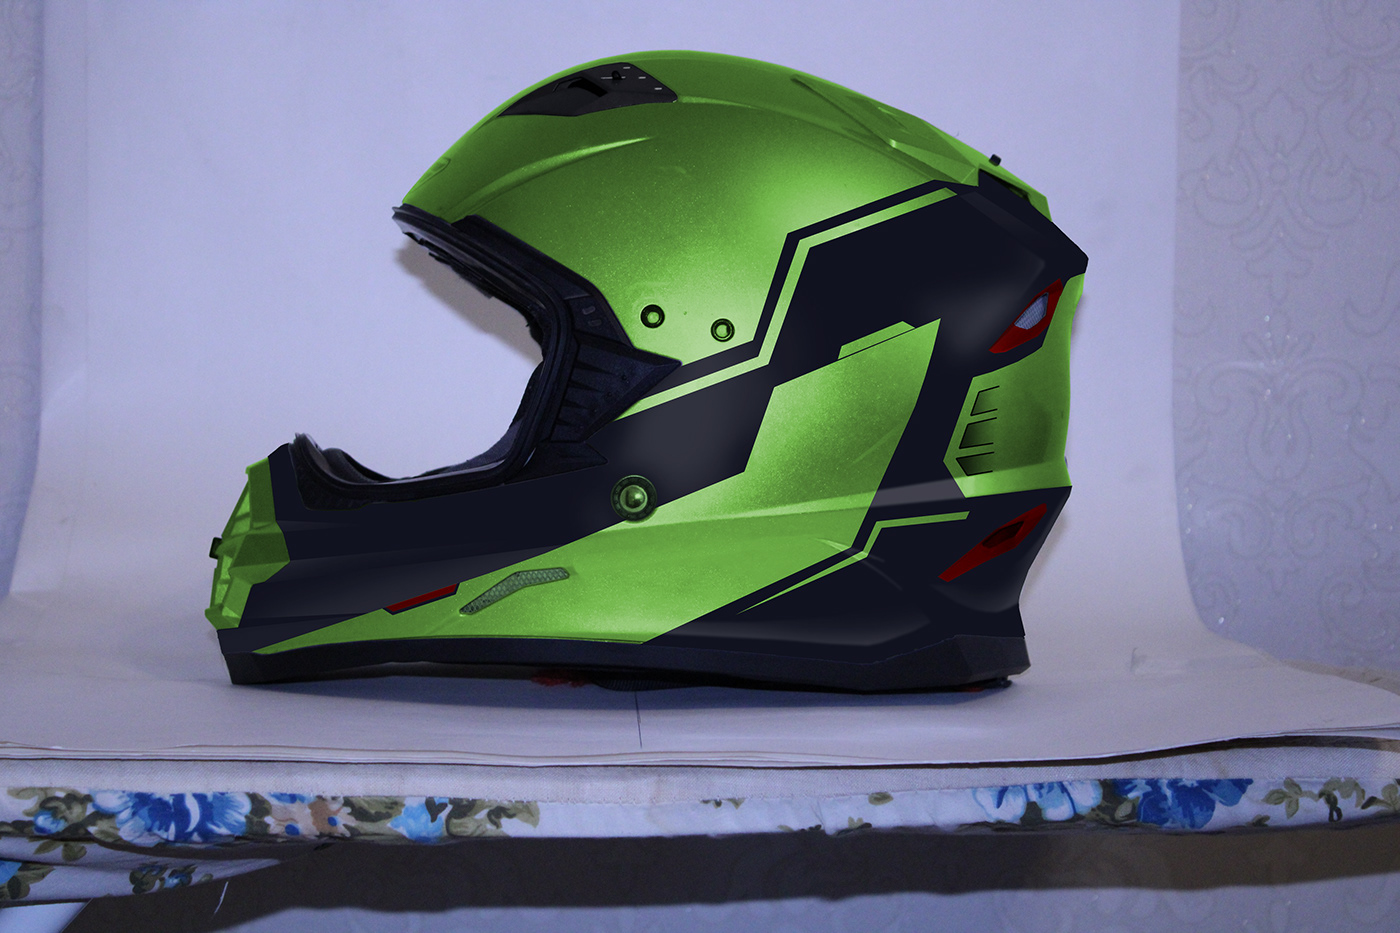 Motorcycle helmet repainting project